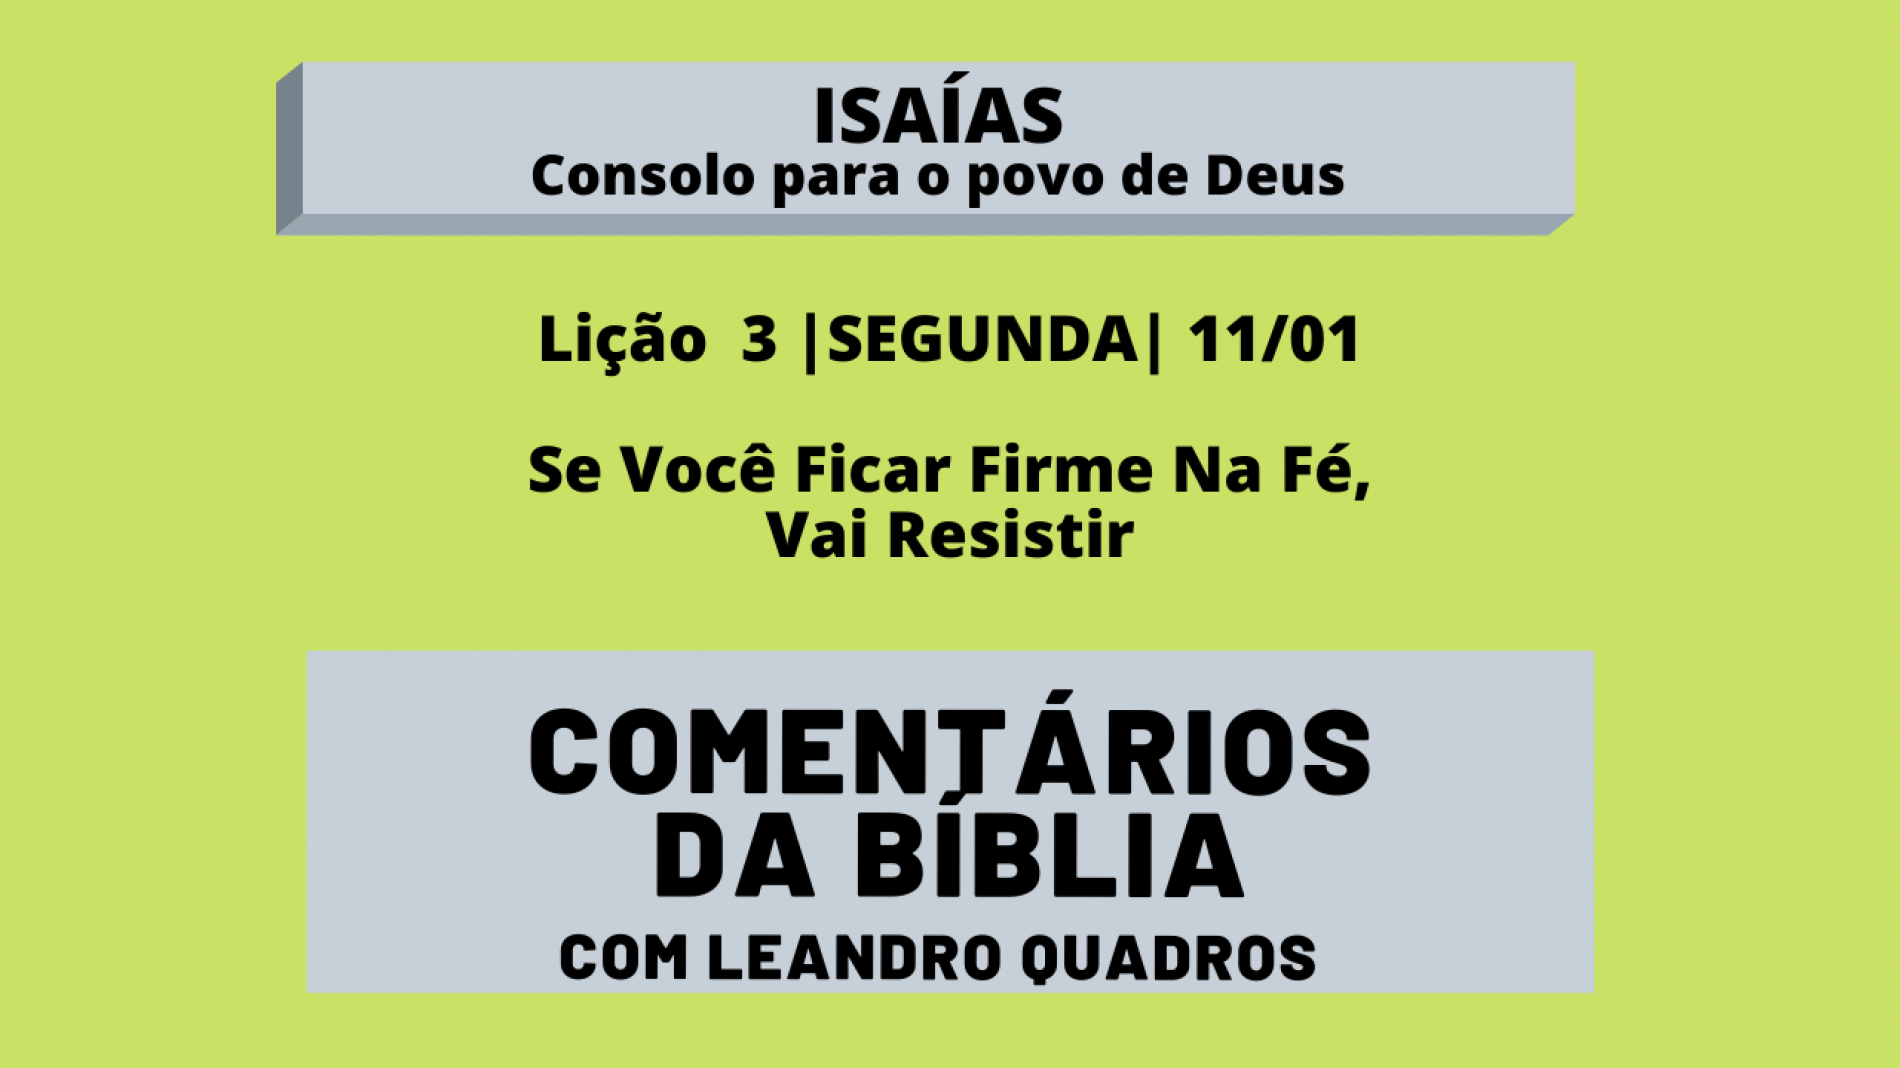 Segunda |11/1| Se Você Ficar Firme Na Fé, Vai Resistir – Lição 3 – Lições da Bíblia com Leandro Quadros